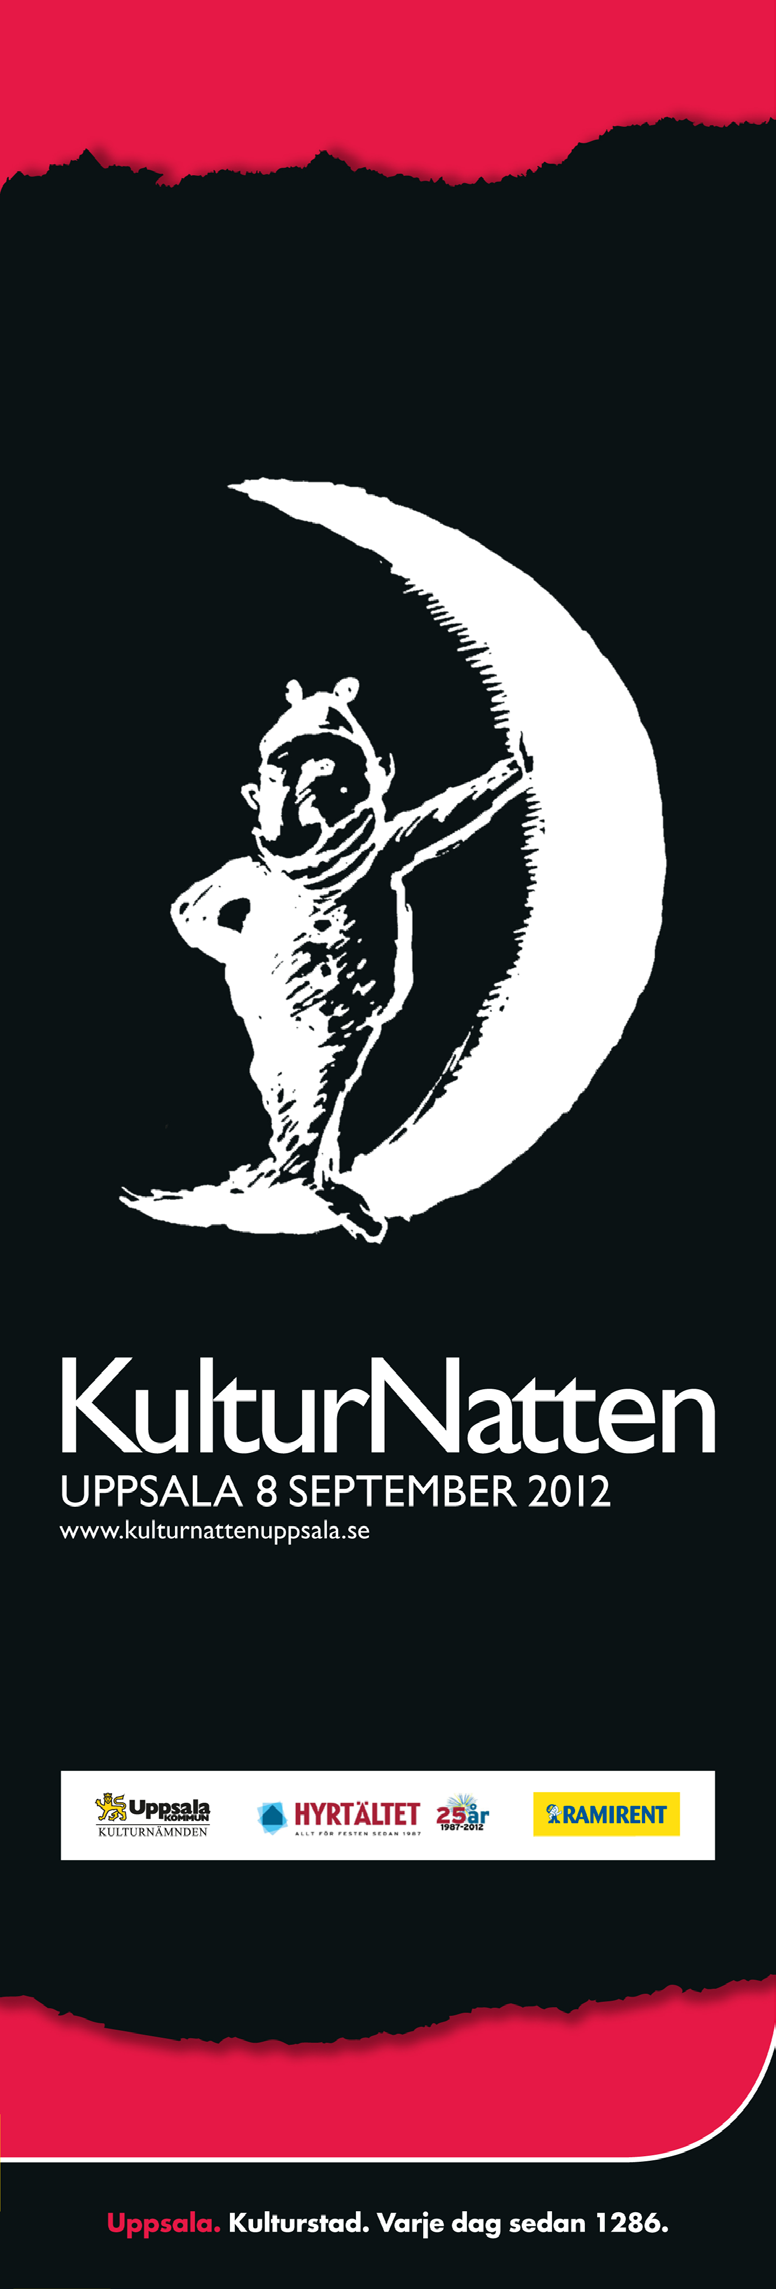 Annonsering Annonsering har skett främst genom projektet Kulturstaden (se specifikation nedan).